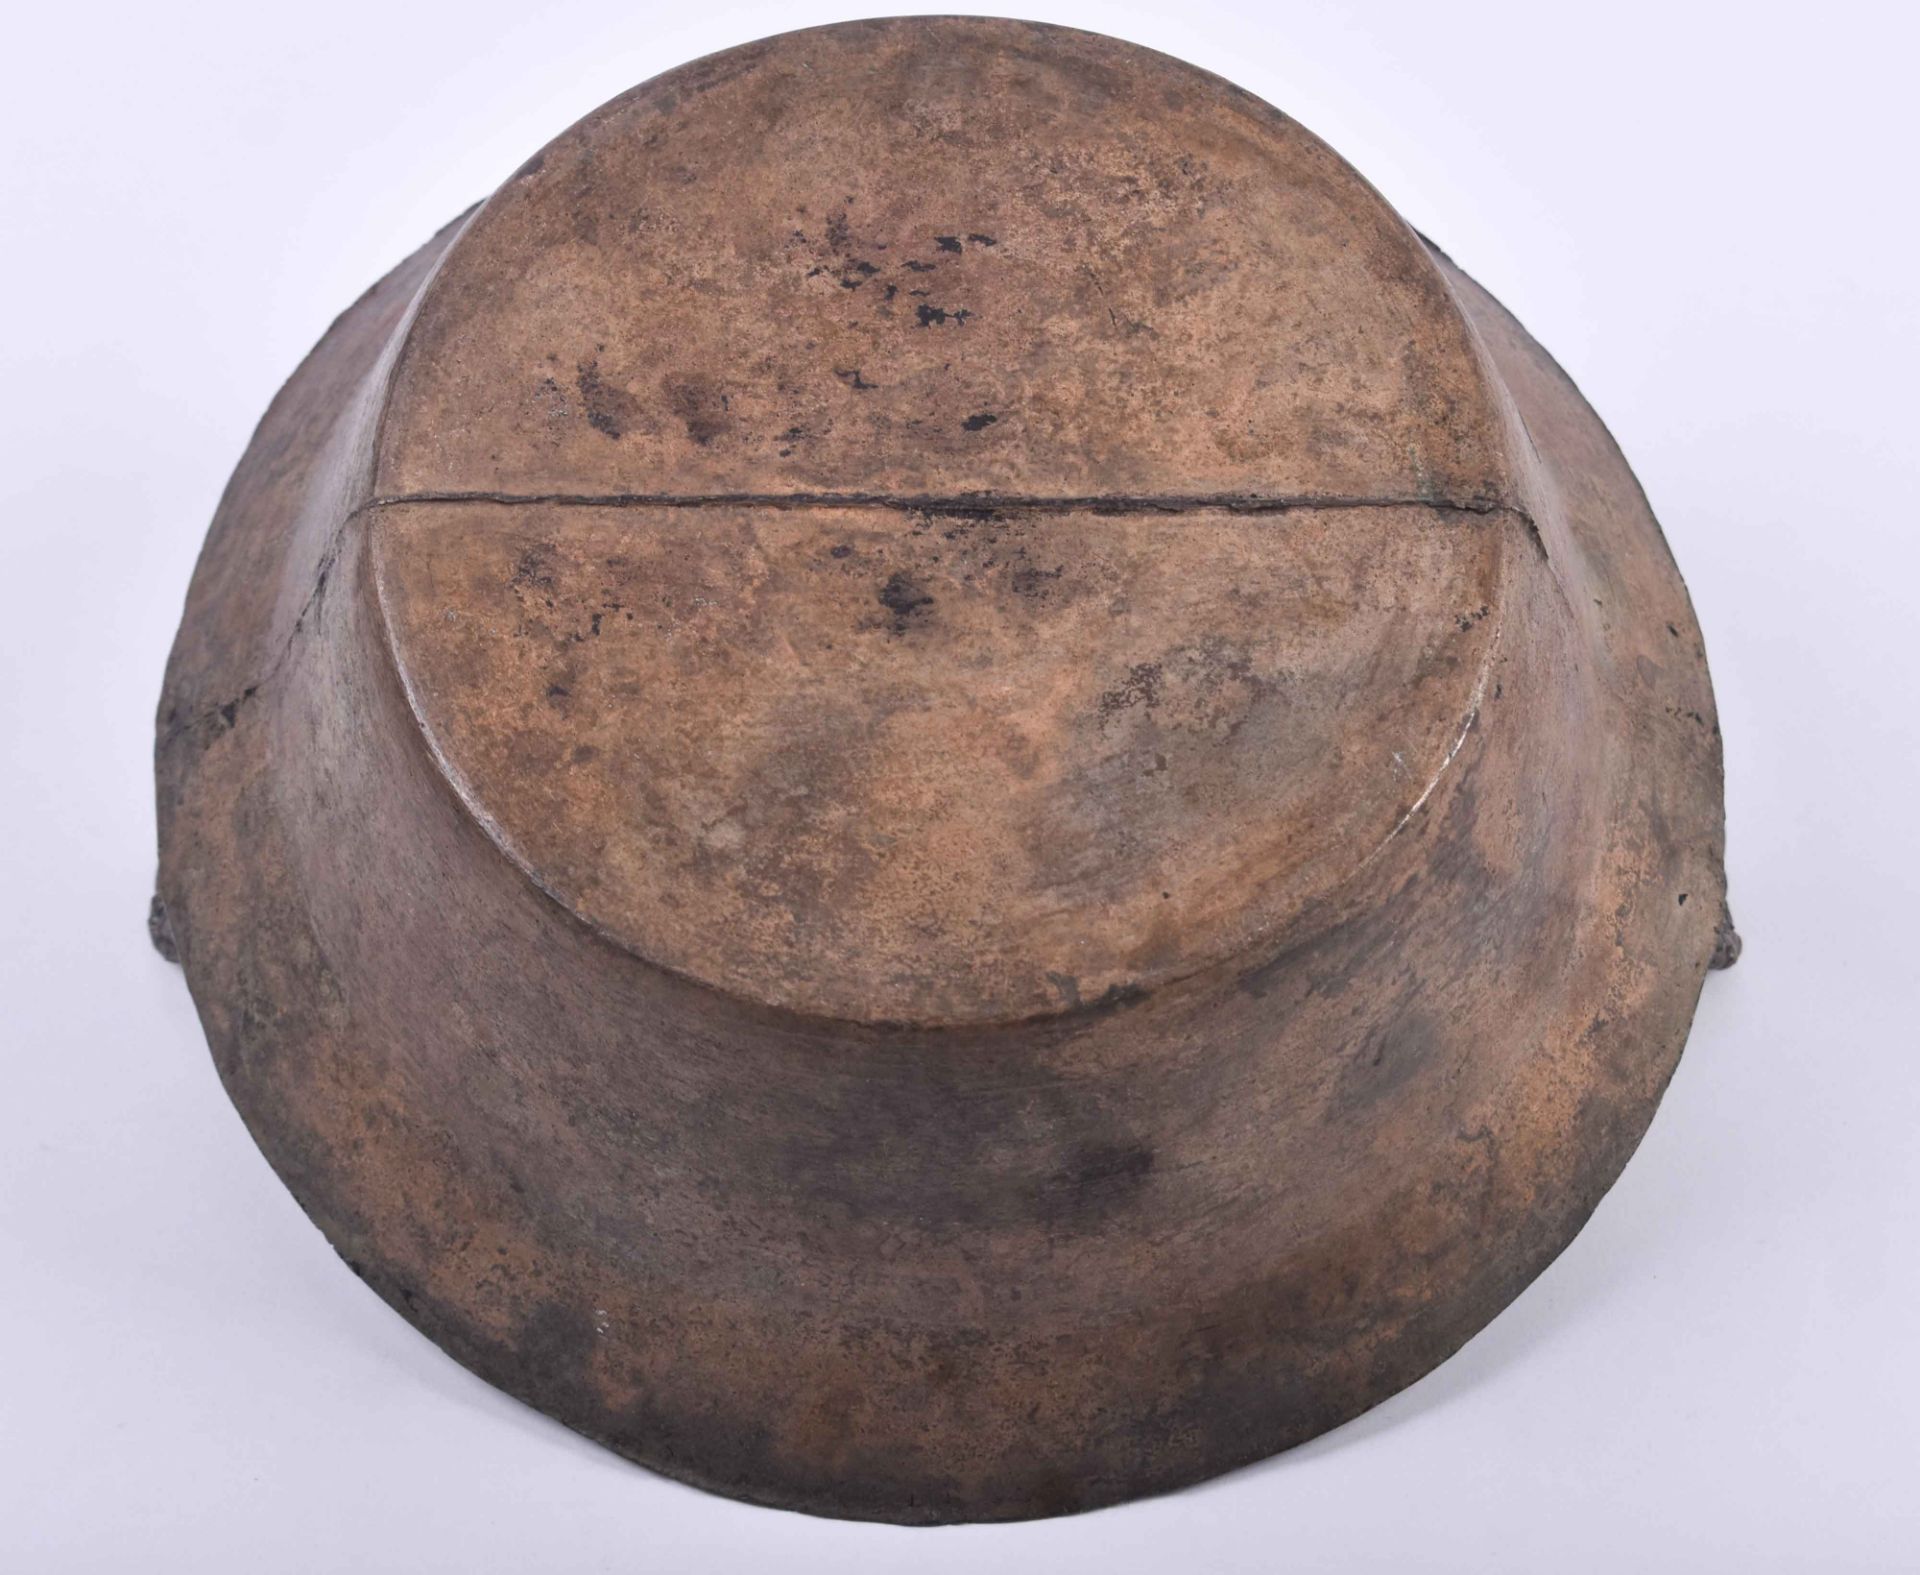  Ritual bowl China Qing dynasty - Image 5 of 6